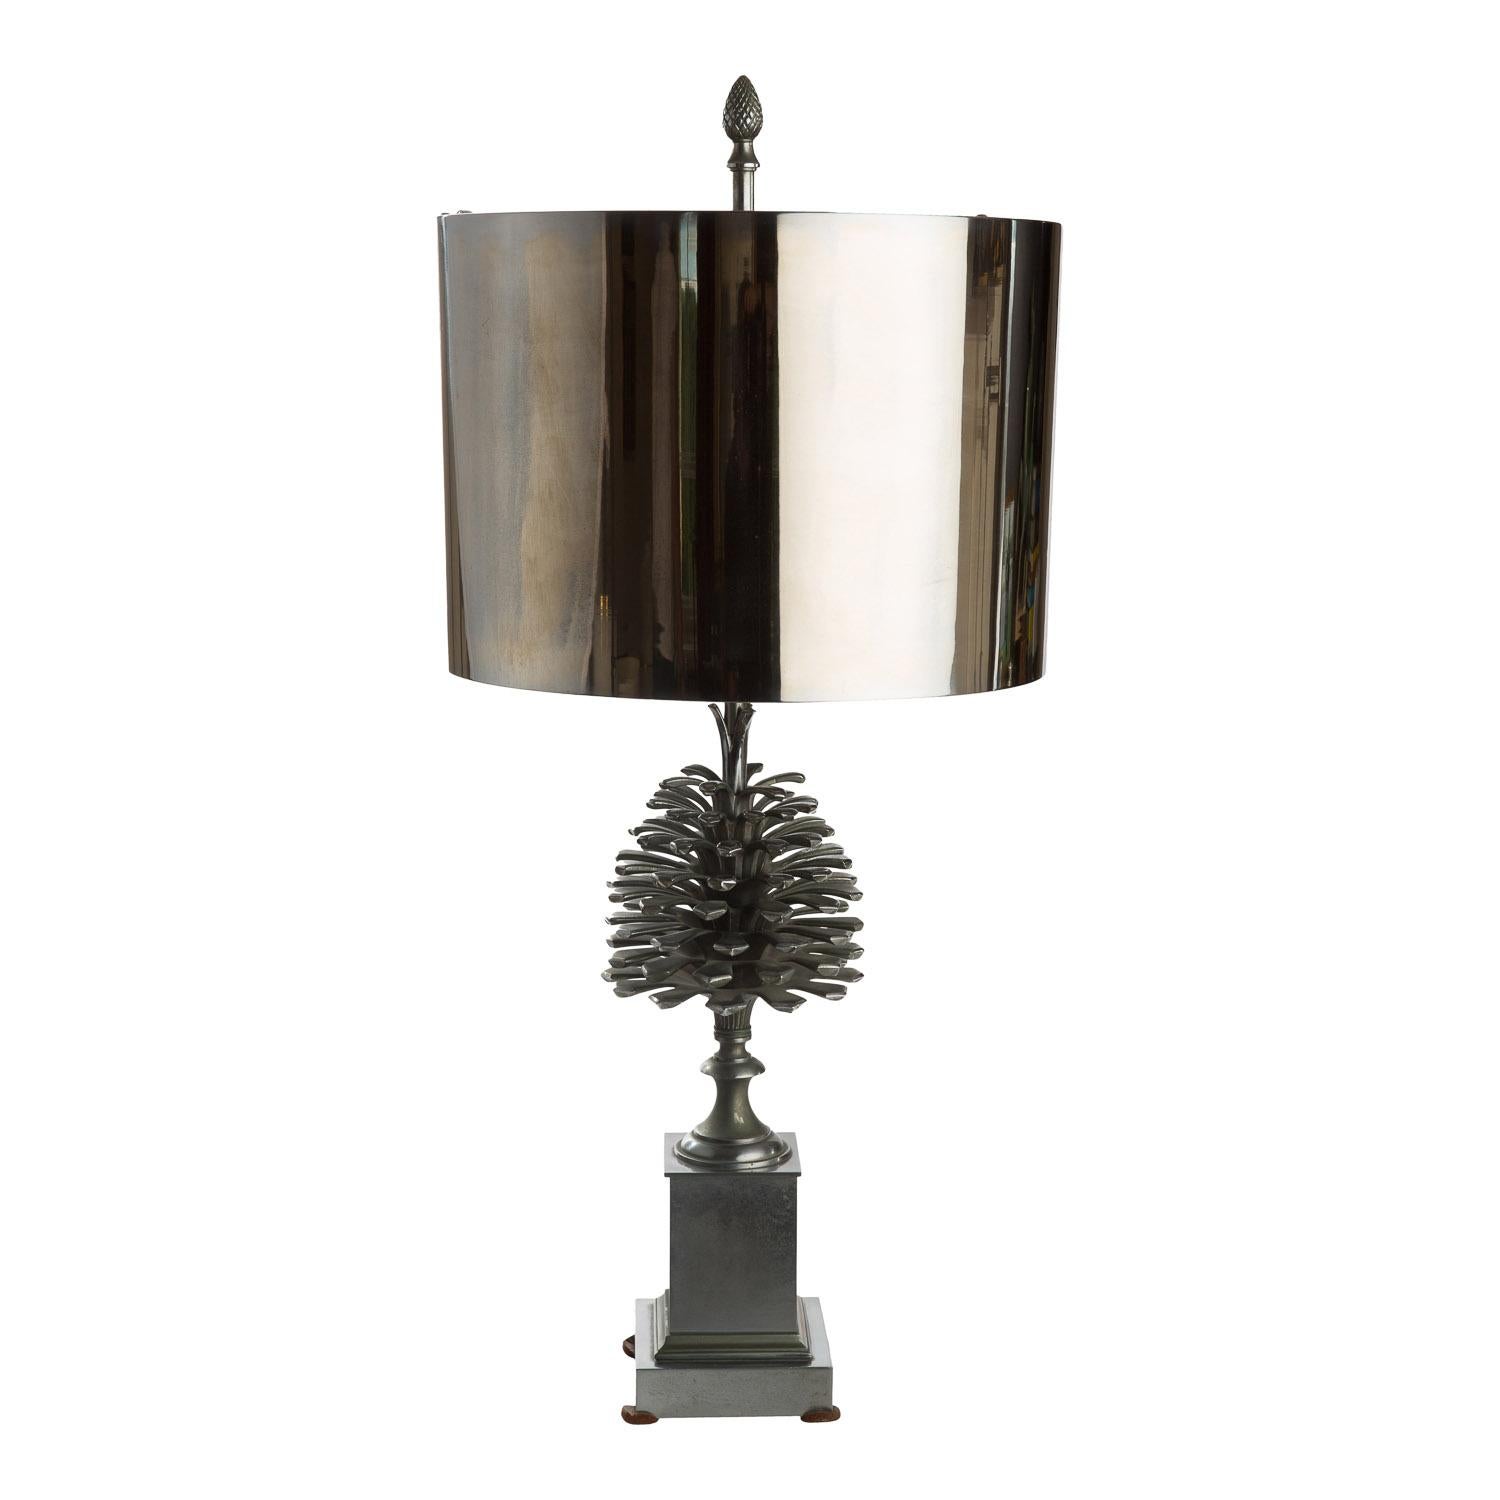 La lampe de bureau Pomme de Pin (Pine Cone) de la Maison Charles